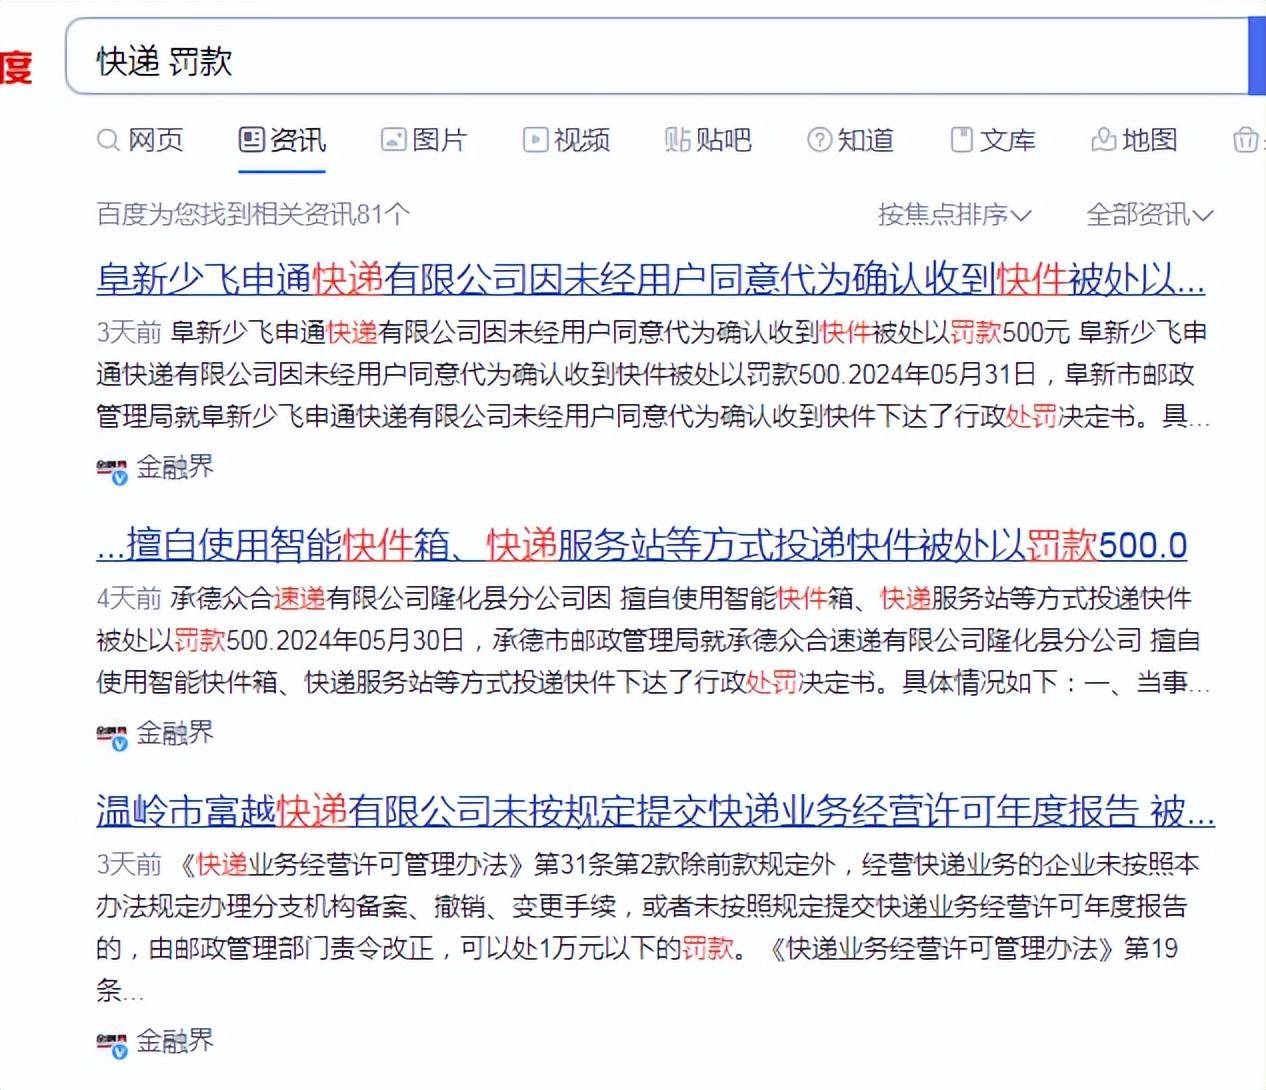 如4月,宁波申通快递有限公司因未向协议用户书面告知包装物要求被处以